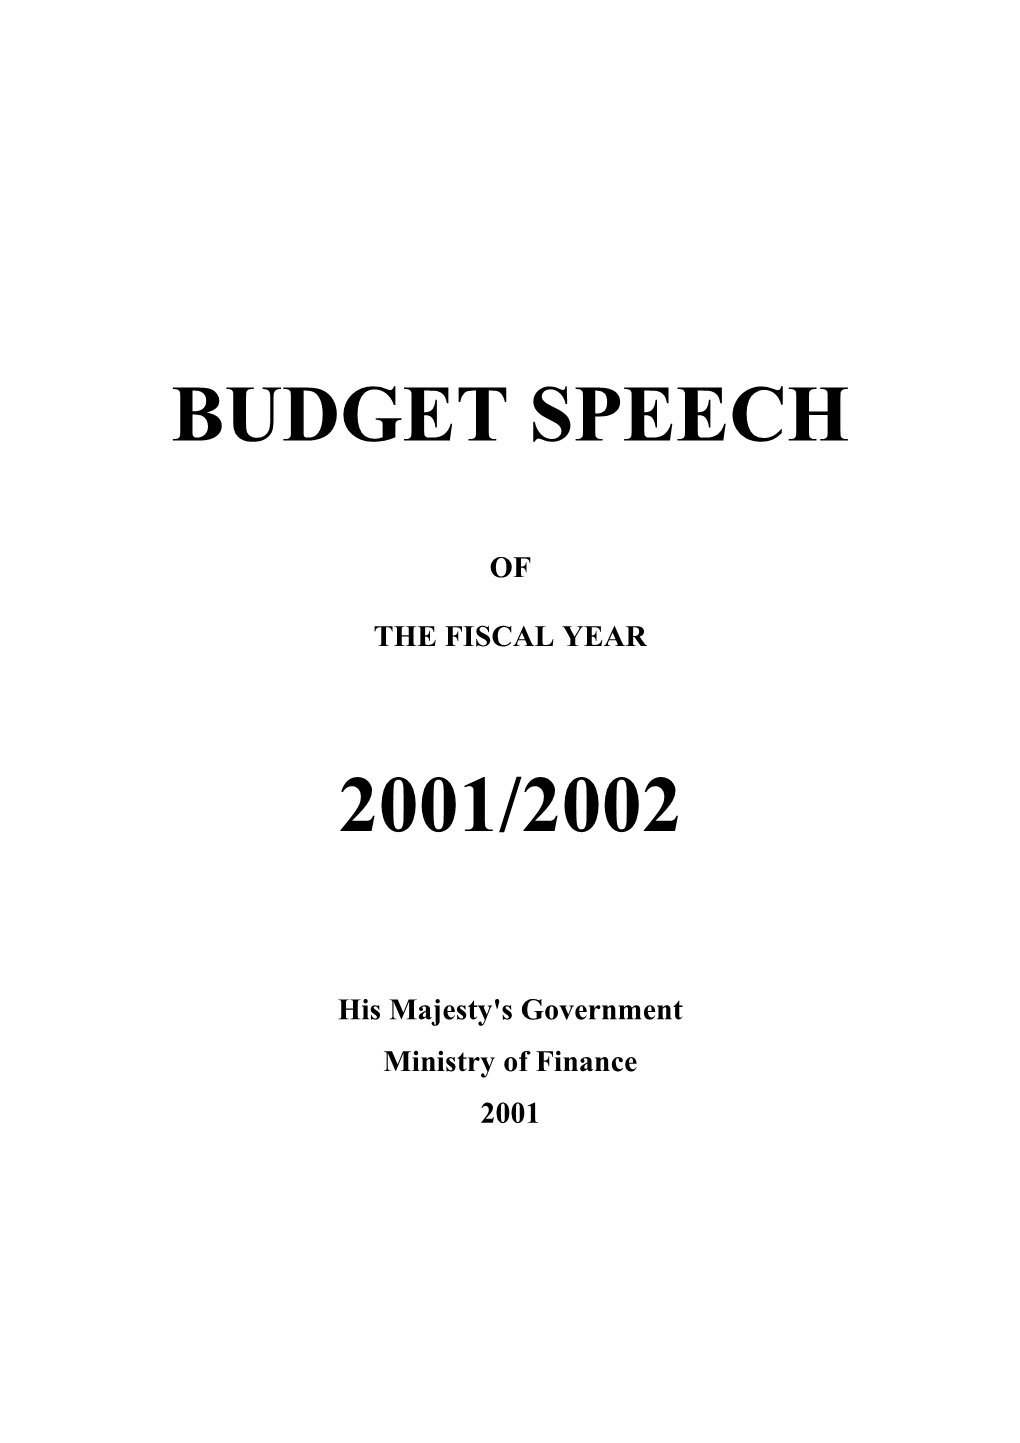 Budget Speech 2001/2002